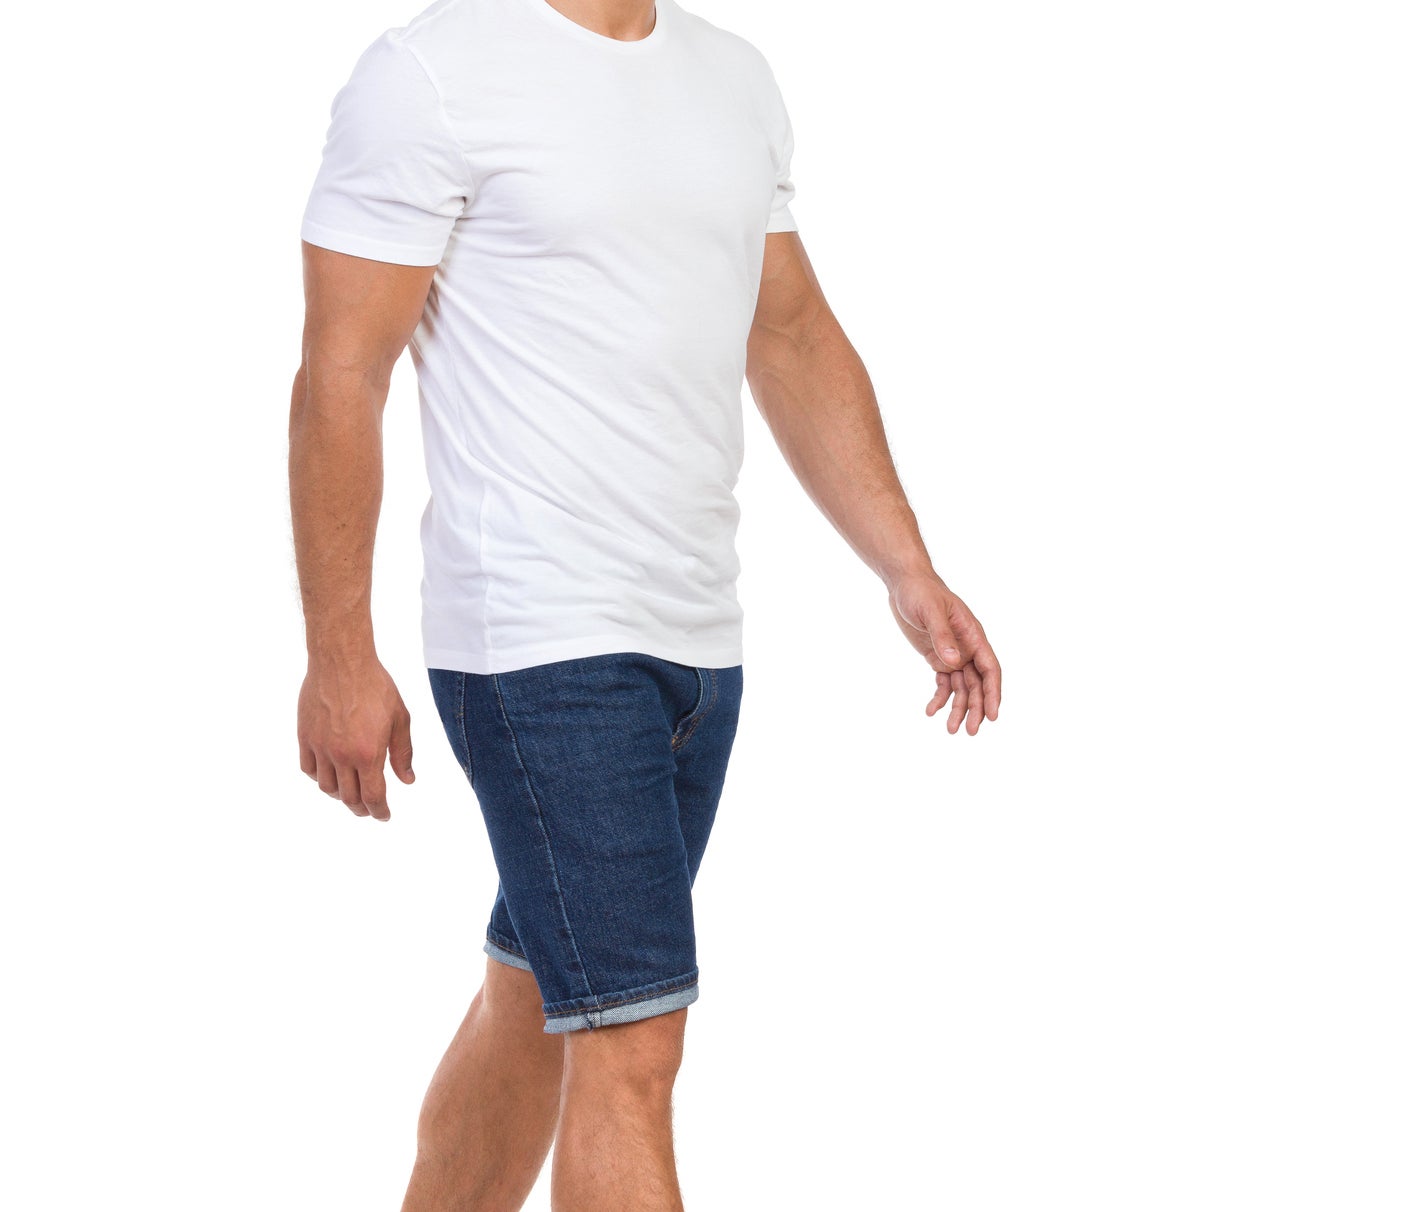 A man wearing a T-shirt, denim shorts, and flip-flops